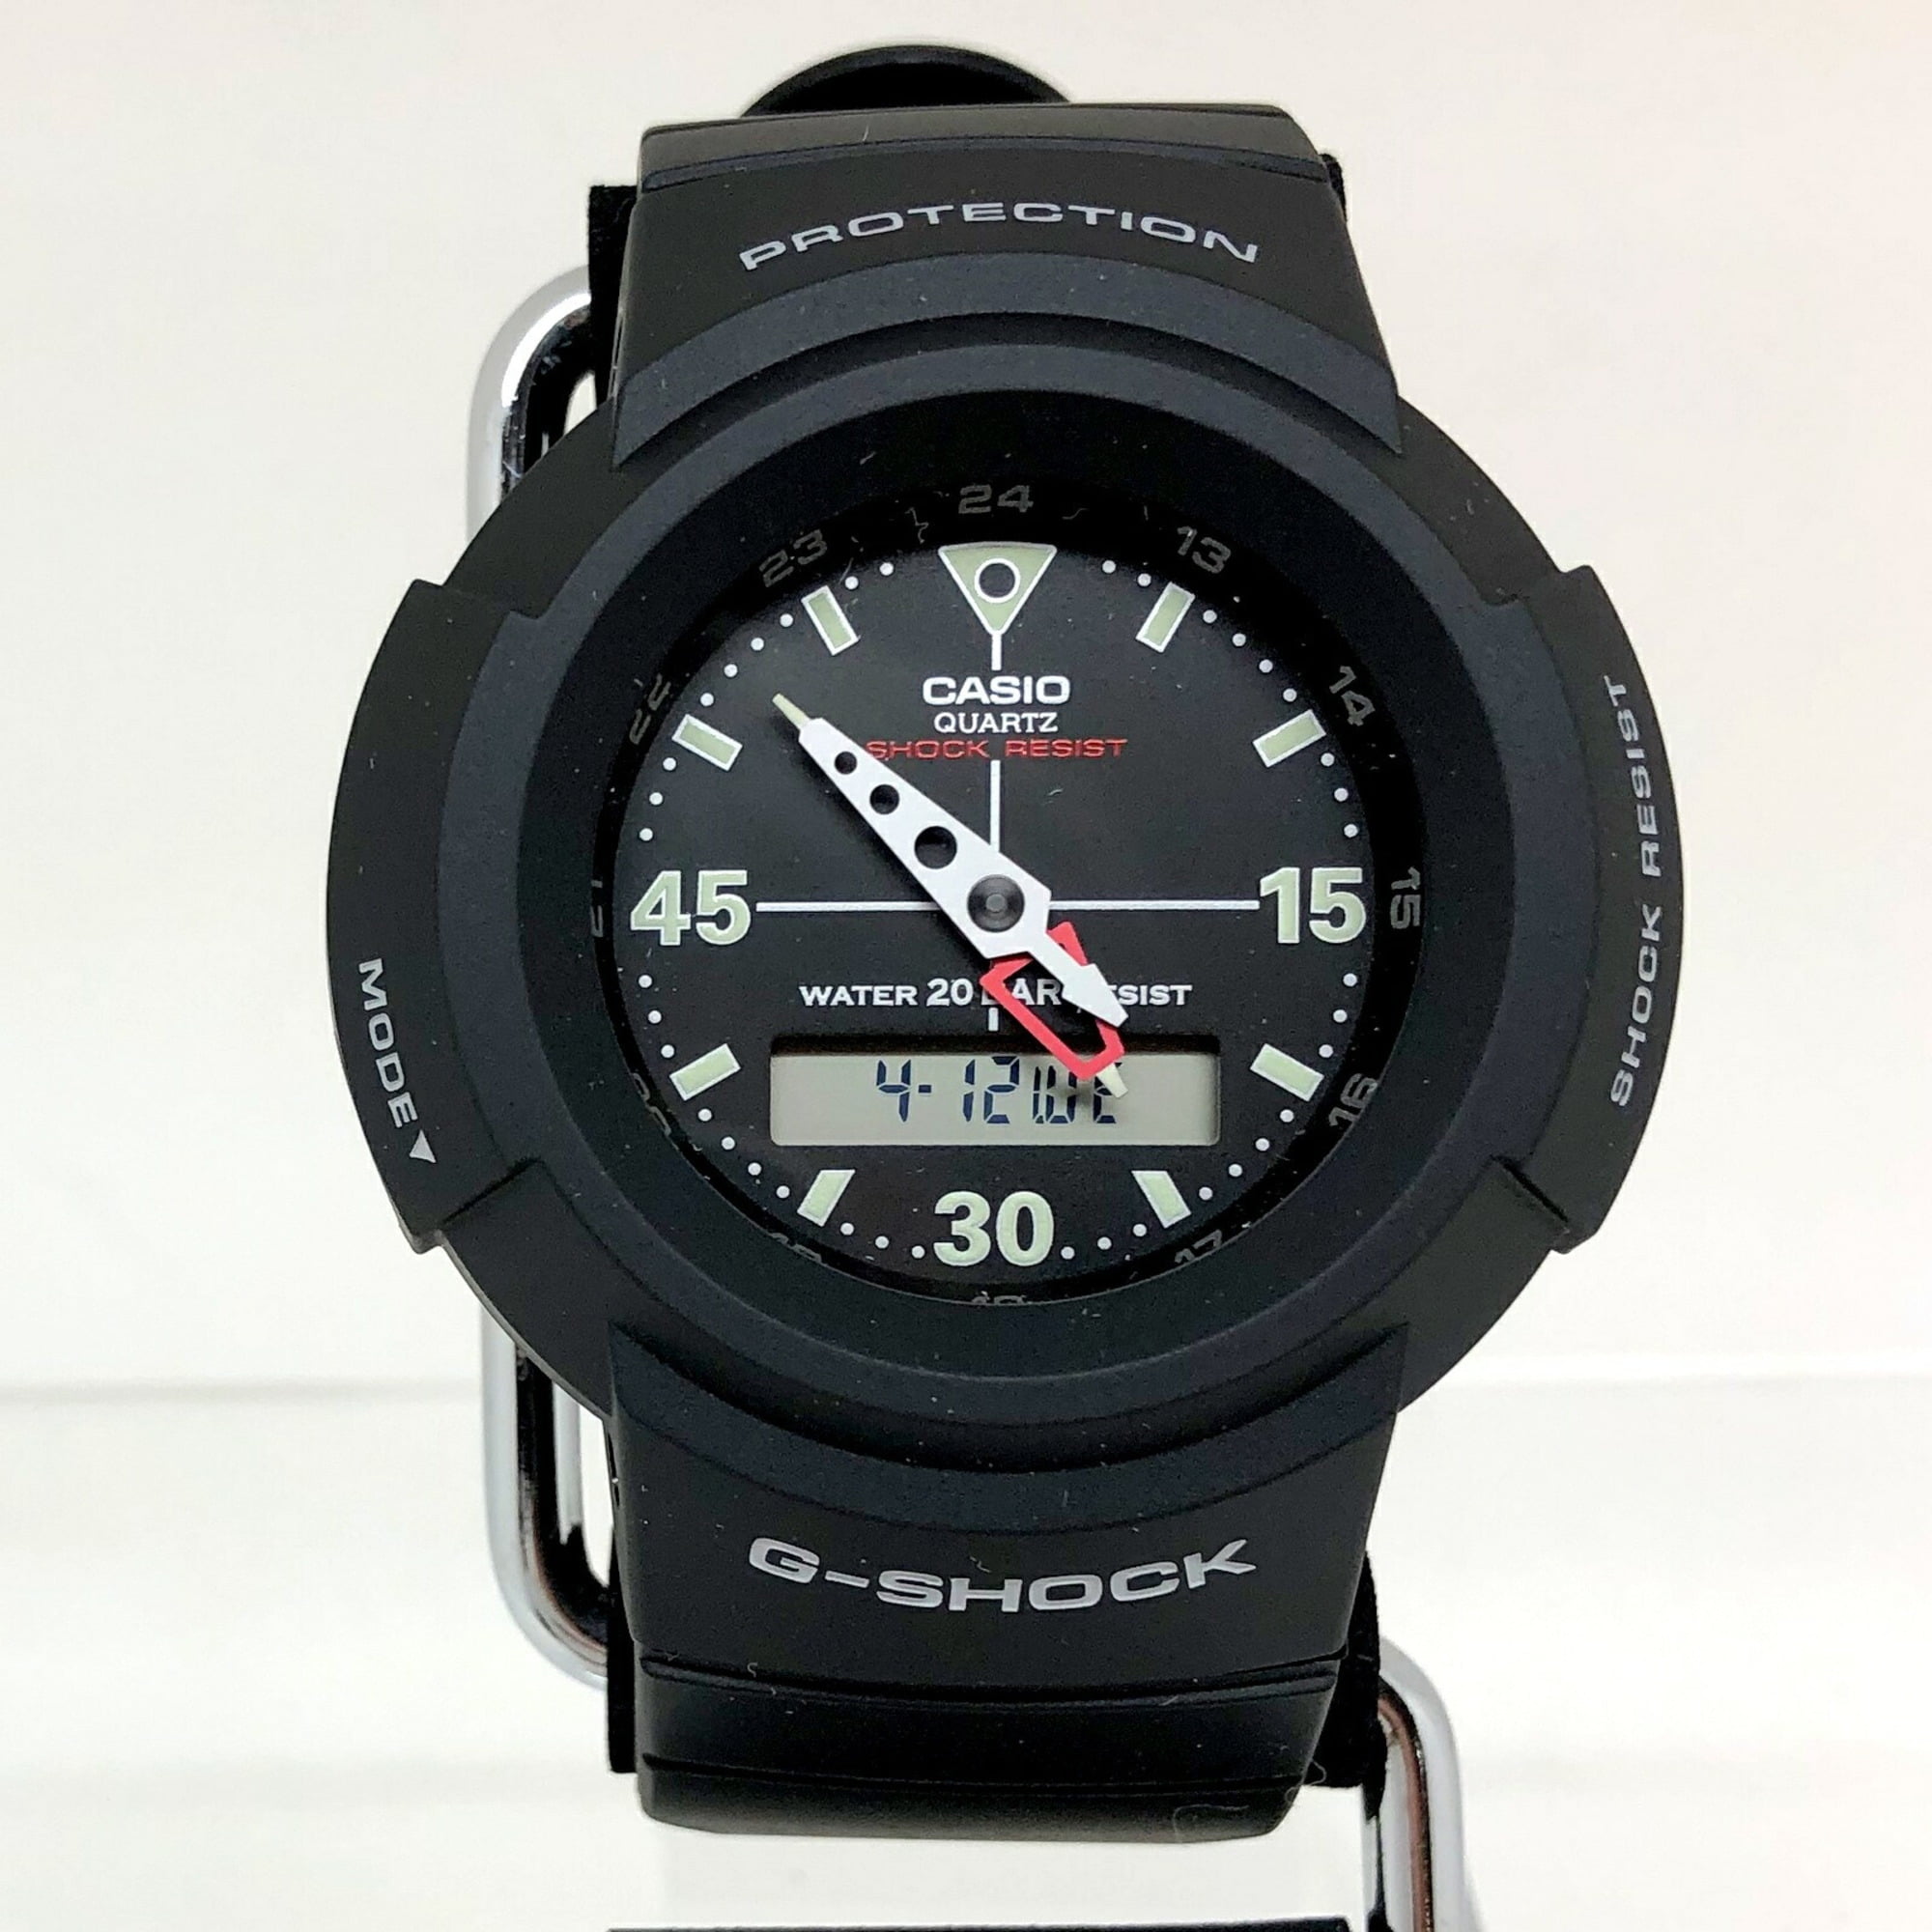 Pre-Owned CASIO Casio G-SHOCK G-Shock wristwatch AW-500E-1EJF Diana  Ana-digi quartz men's (Like New) - Walmart.com